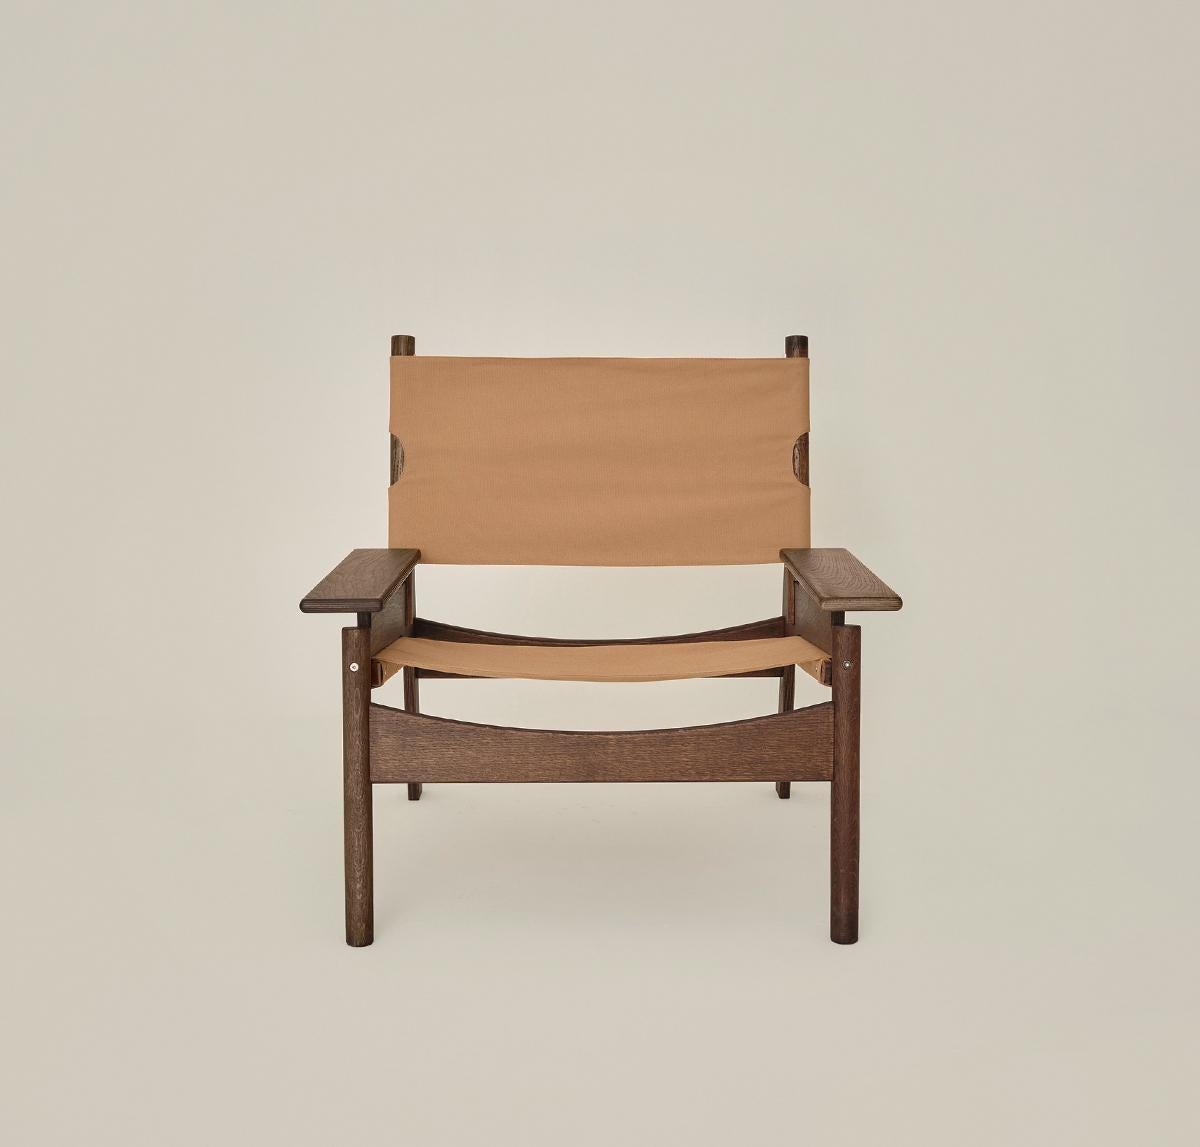 Frame Lounge Chair ist ein von skulpturalen Formen inspiriertes Sitzmöbel mit einem breiteren und niedrigeren Design, das demjenigen, der sich darauf niederlässt, das Gefühl eines Kokons vermittelt.
Mit der Idee, einen gemütlichen Stuhl zu schaffen,